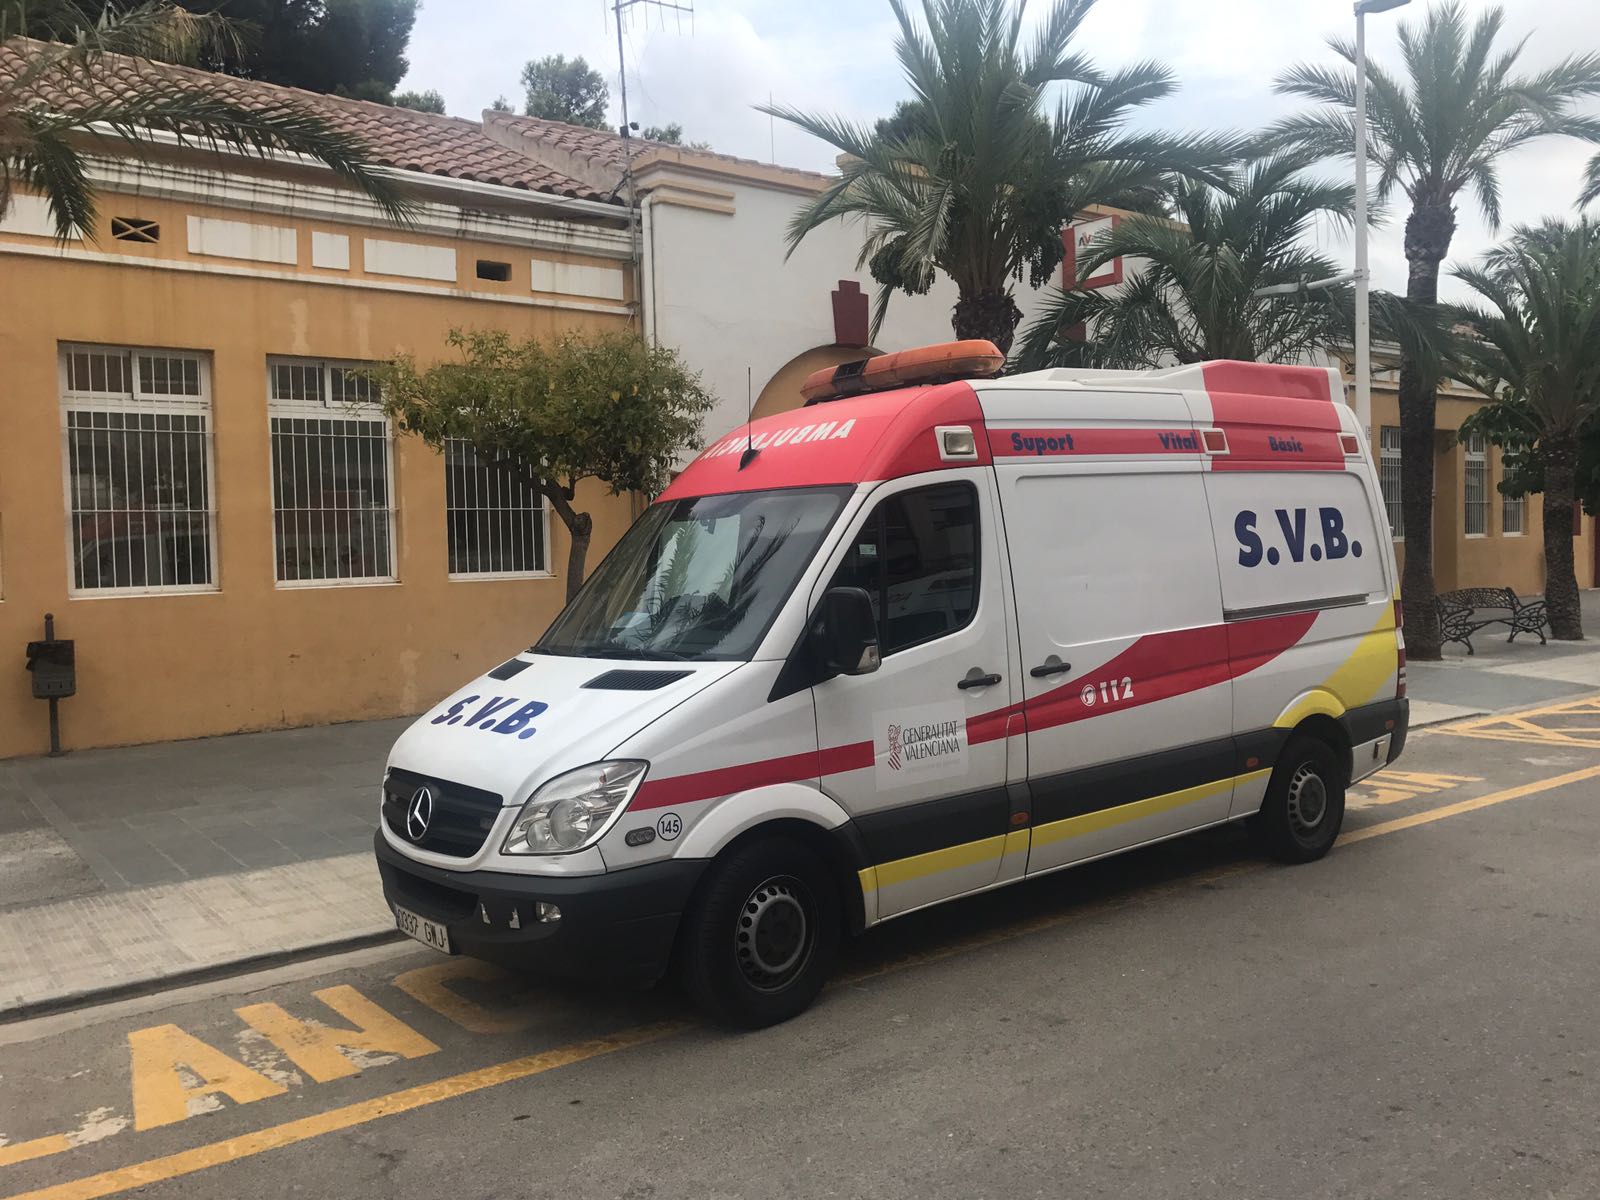 Alcalà insisteix a la Generalitat ampliar el servei d'ambulància de Suport Vital Bàsic a les 24 hores